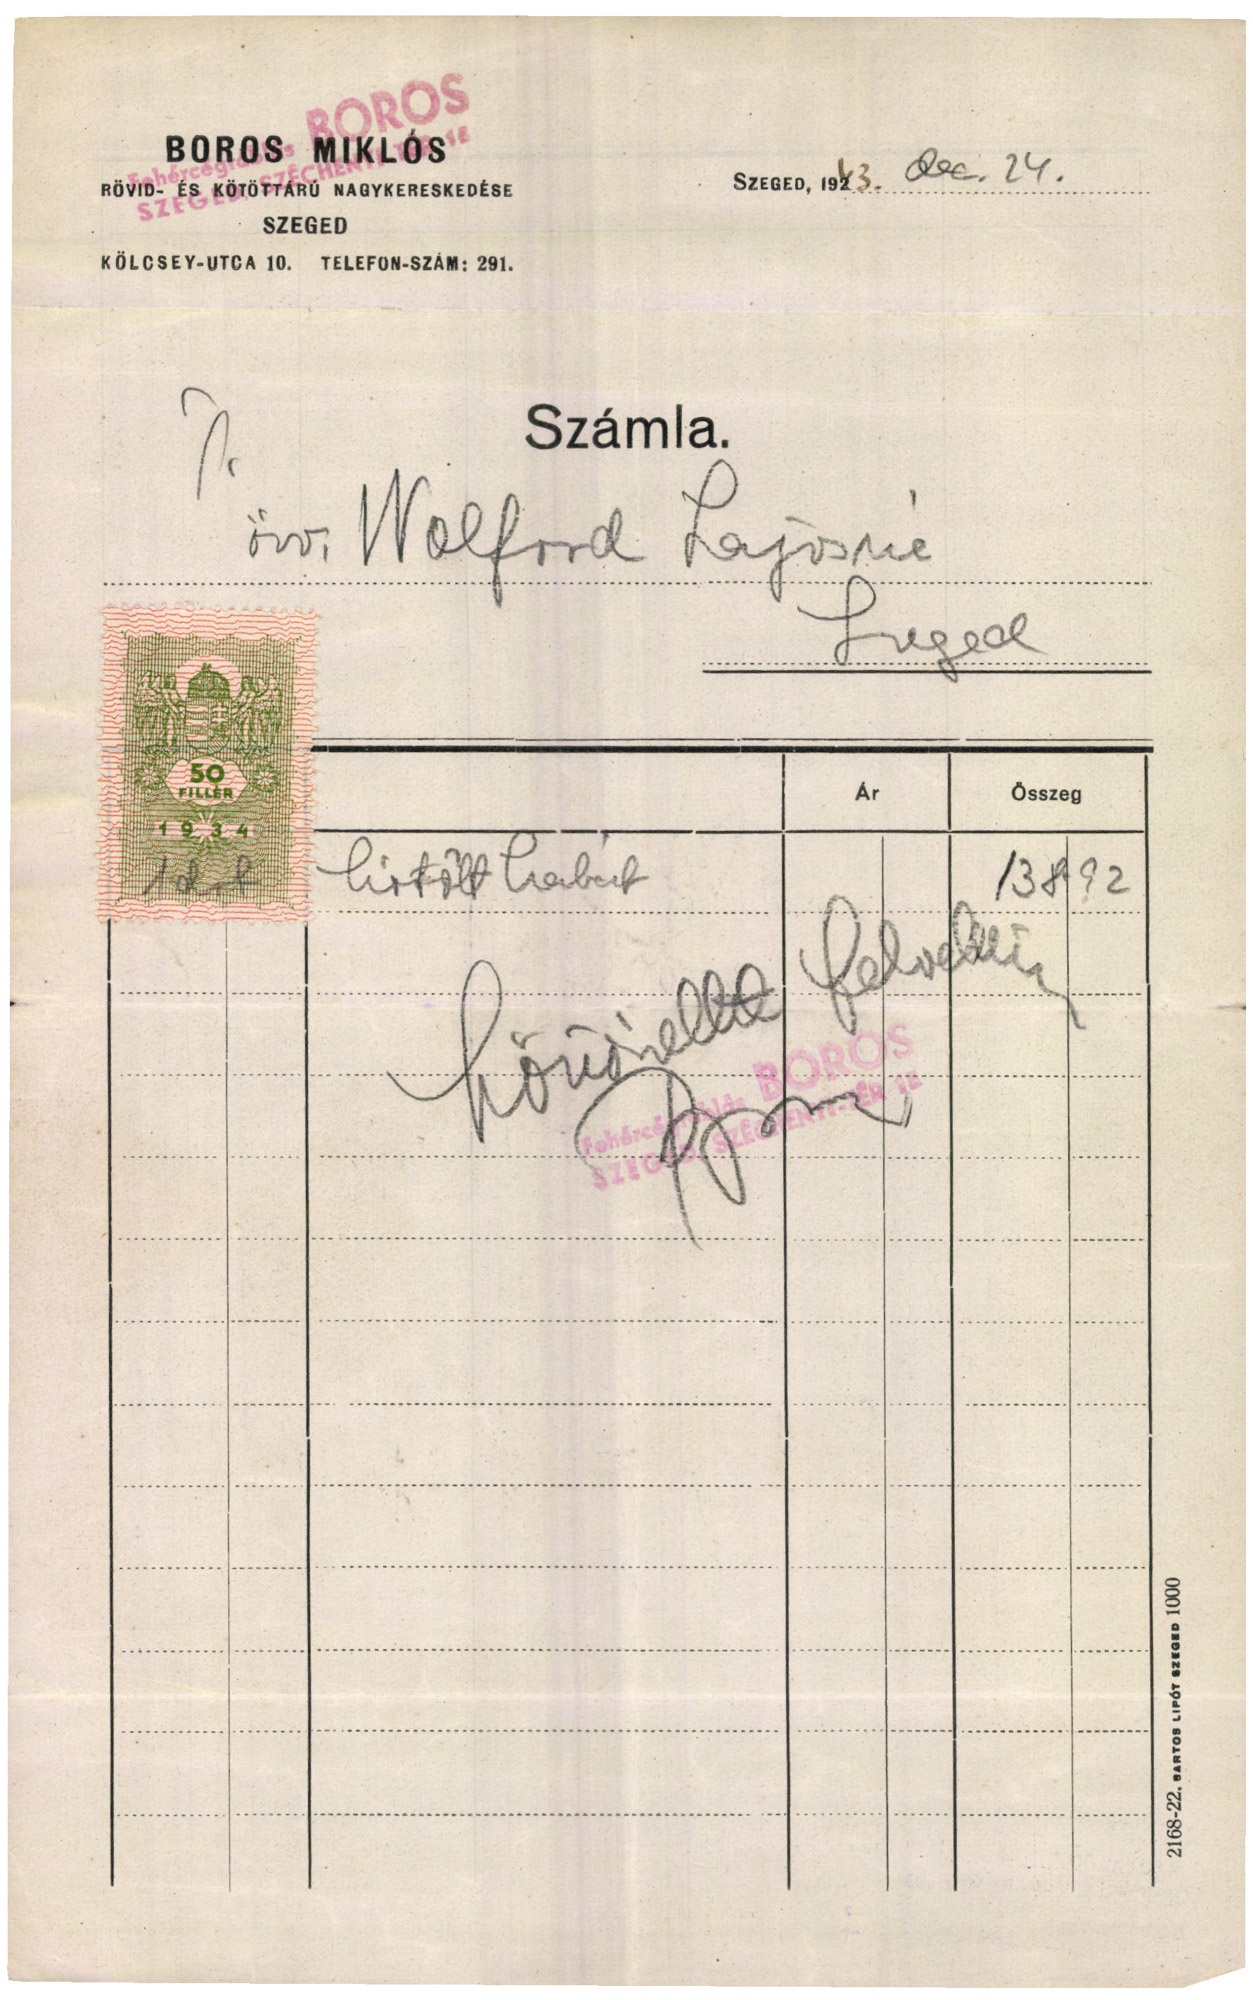 Boros Miklós rövid- és kötöttáru nagykereskedése (Magyar Kereskedelmi és Vendéglátóipari Múzeum CC BY-NC-SA)